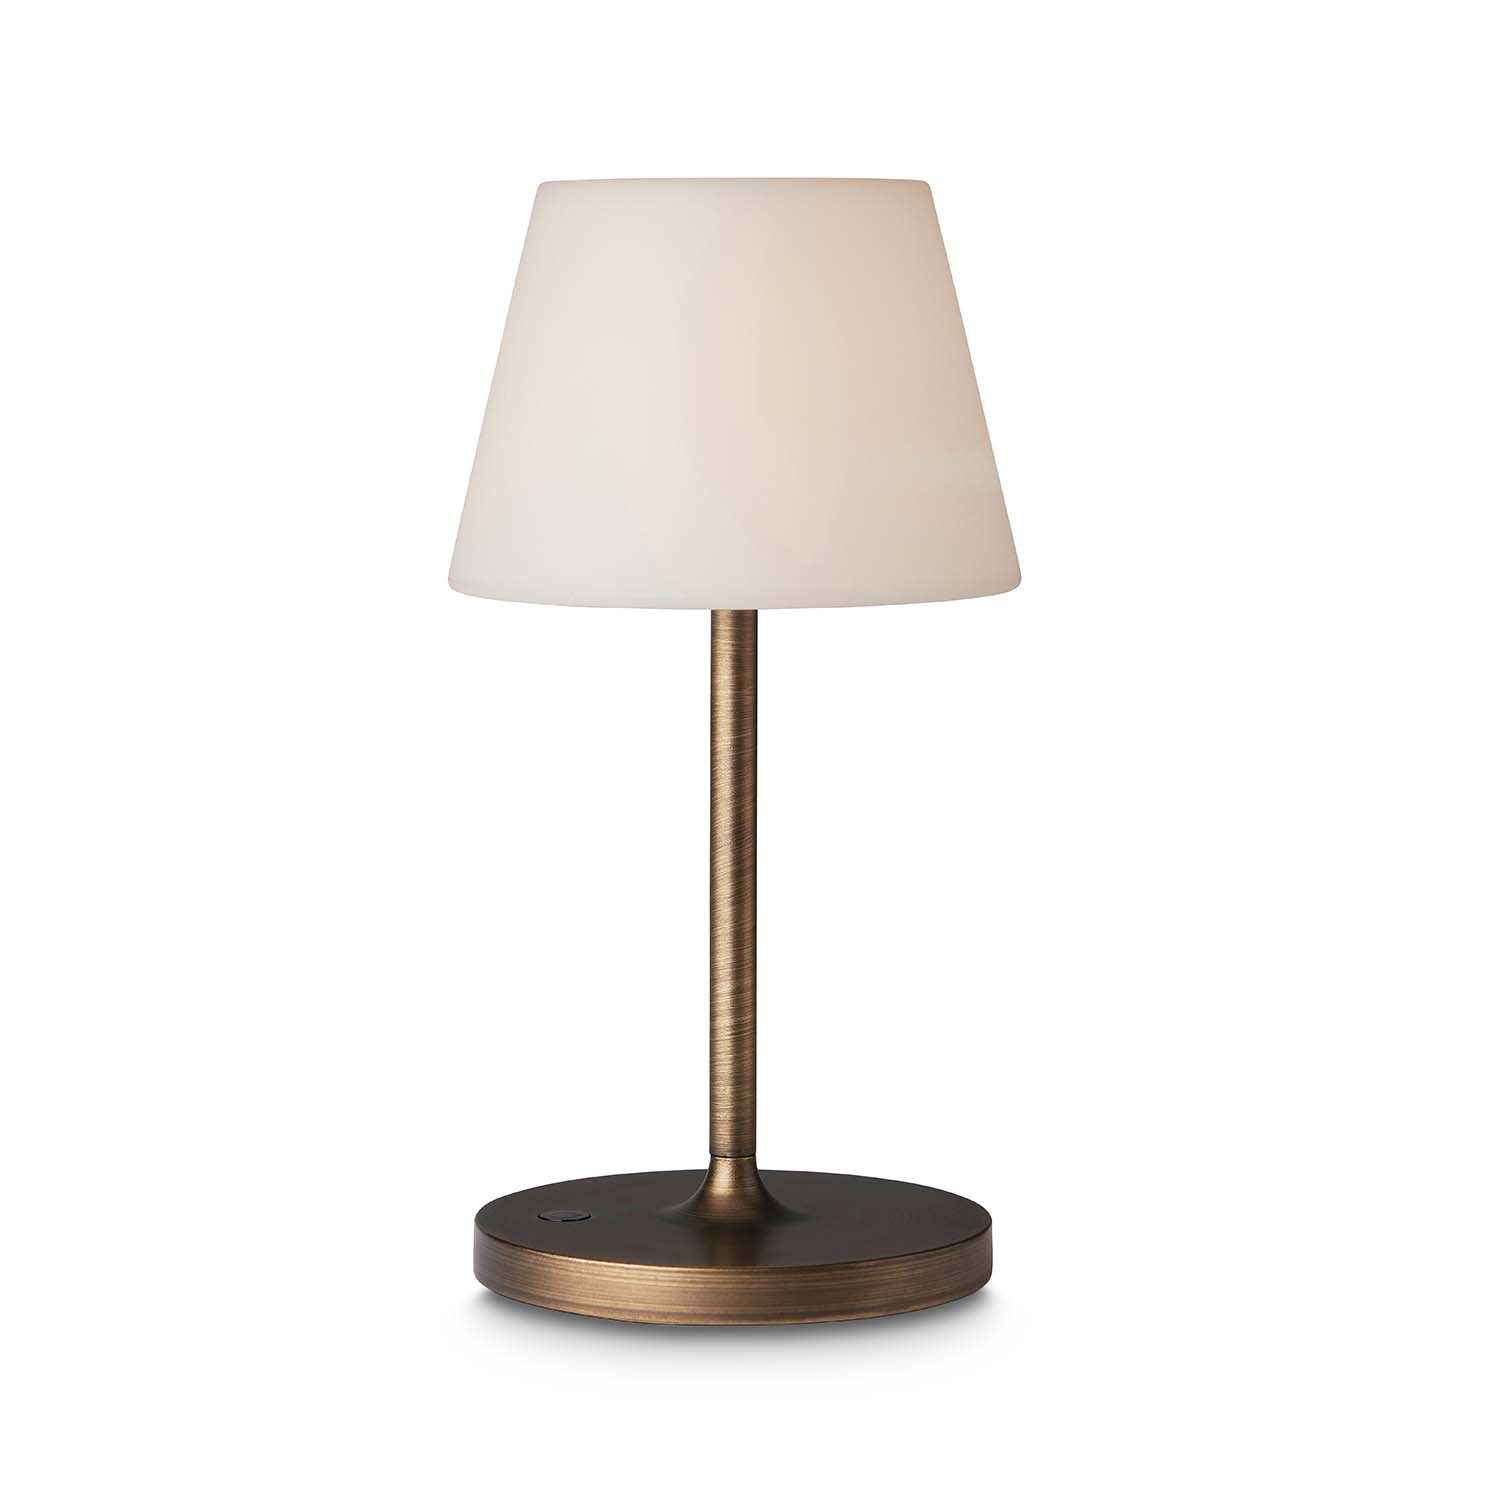 NEW NORTHERN - Lampe de table nomade design sans-fil